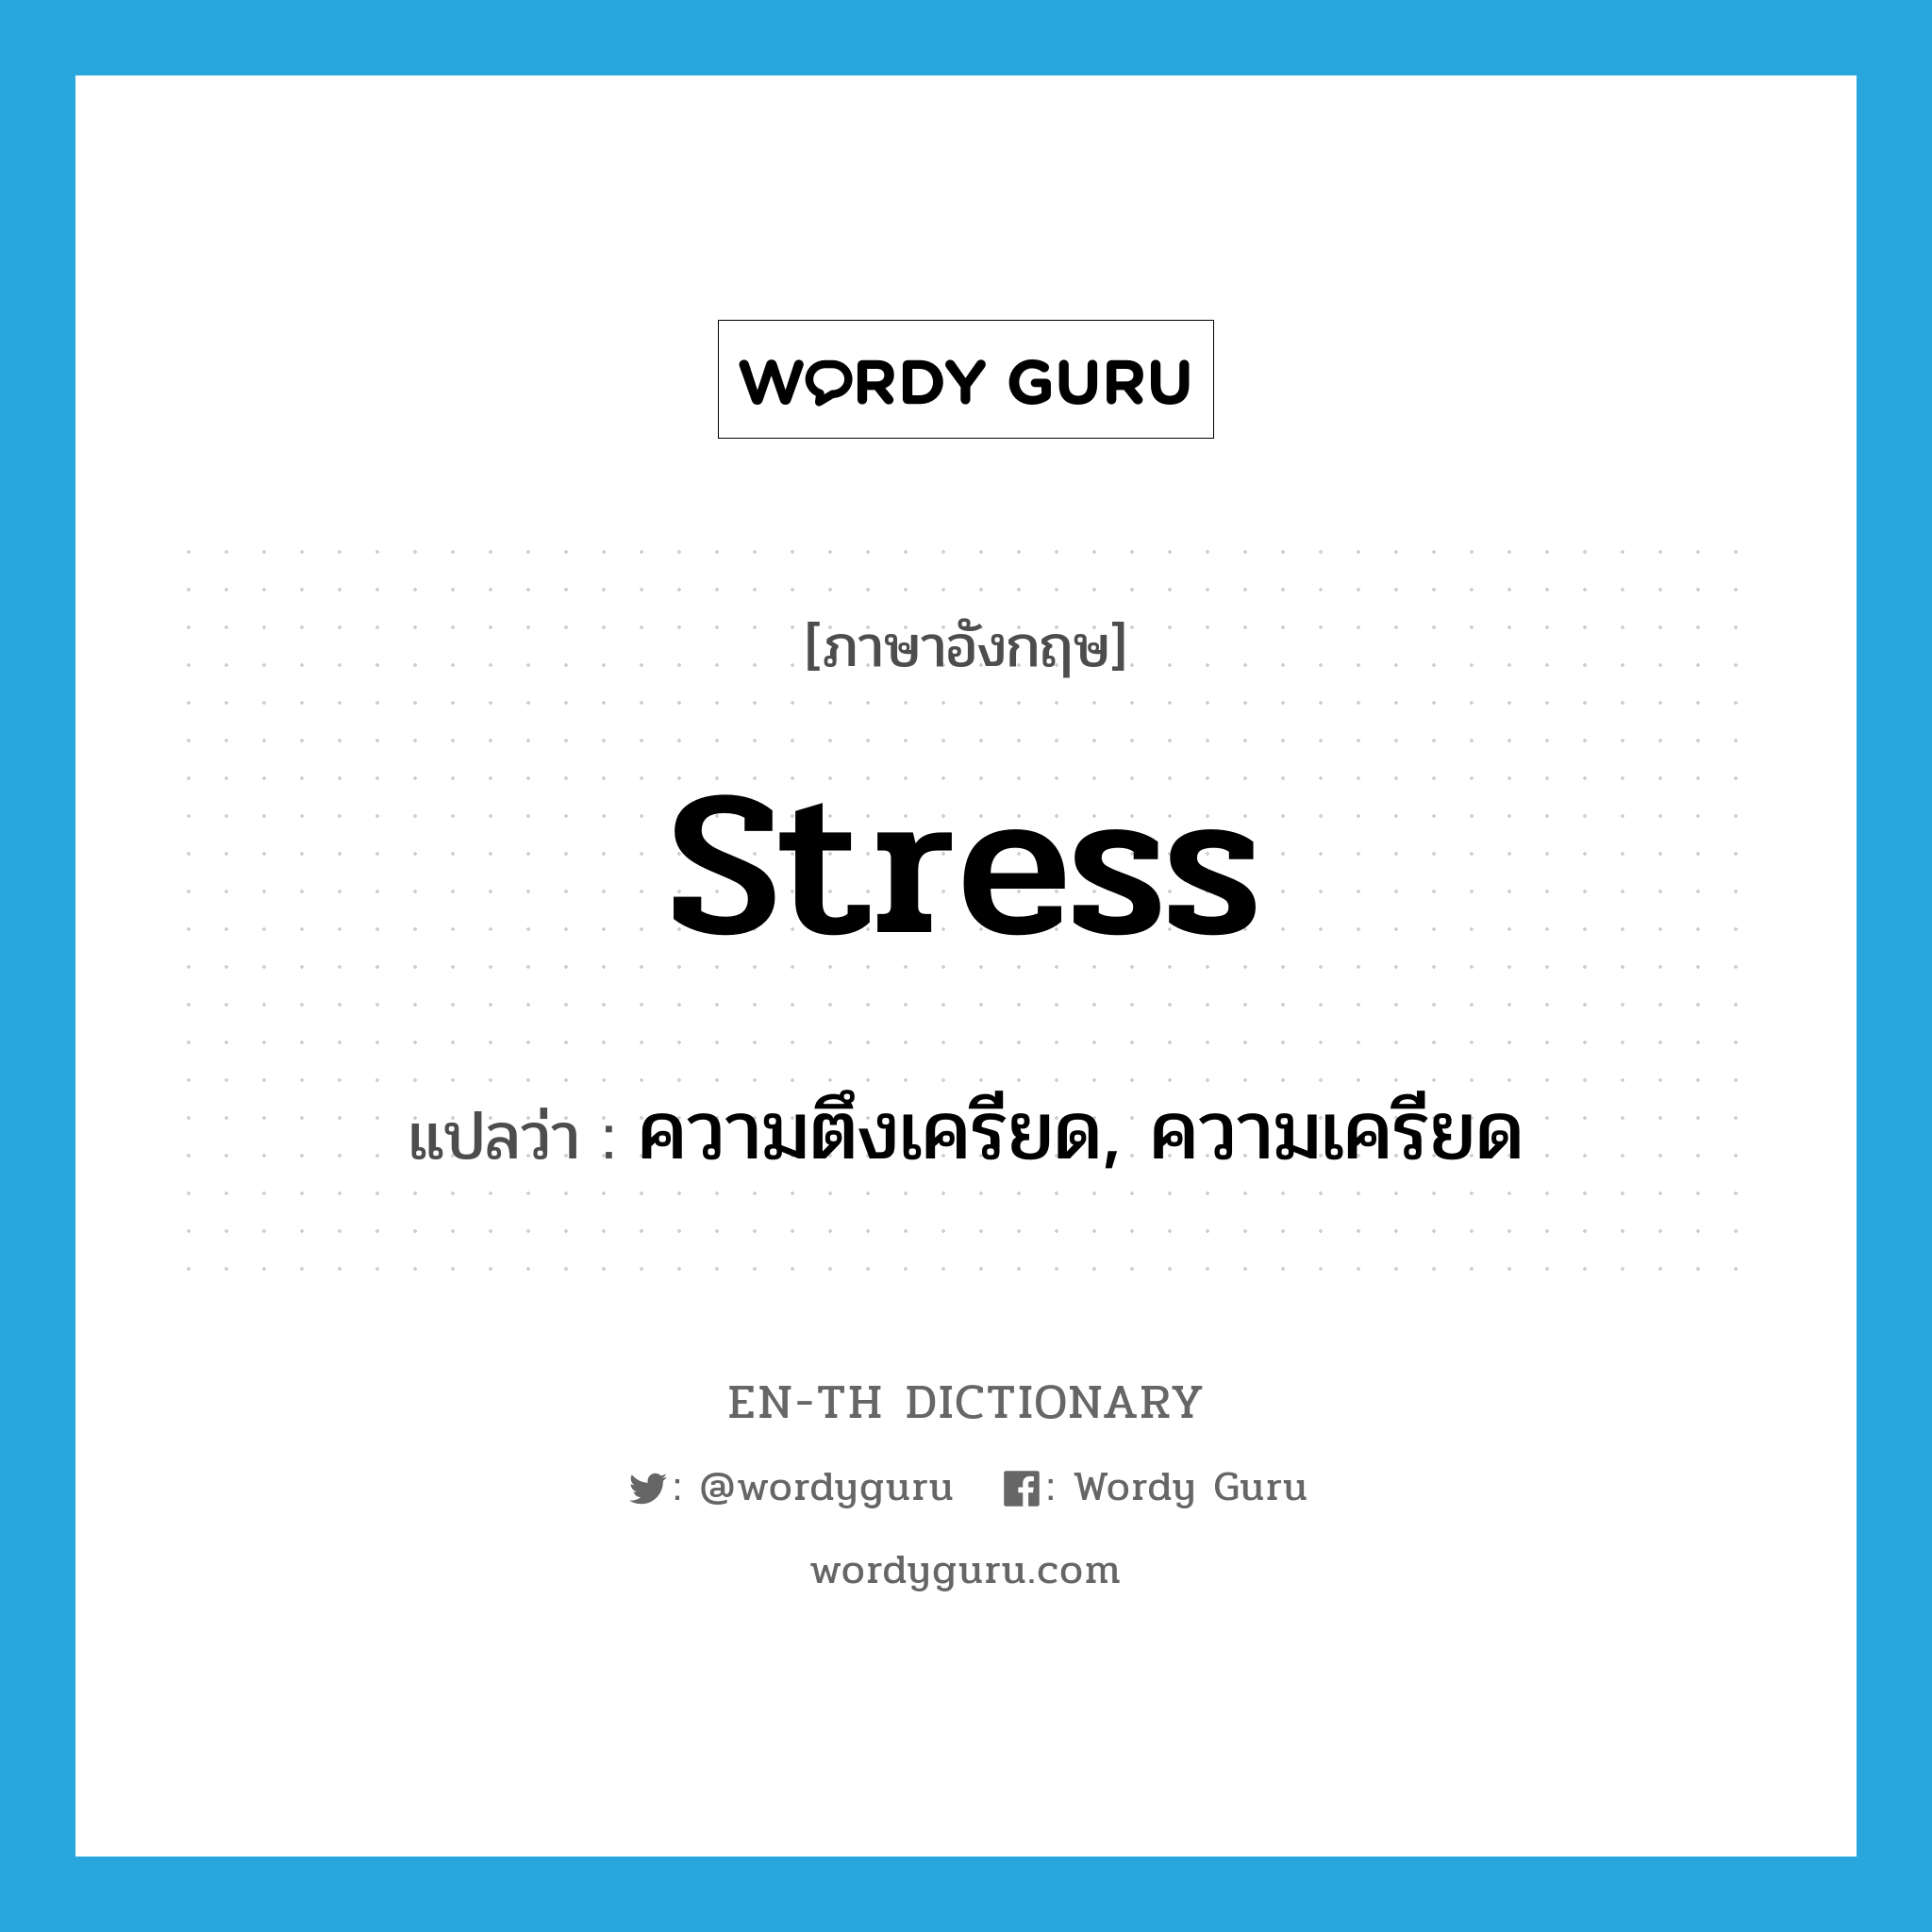 ความตึงเครียด, ความเครียด ภาษาอังกฤษ?, คำศัพท์ภาษาอังกฤษ ความตึงเครียด, ความเครียด แปลว่า stress ประเภท N หมวด N